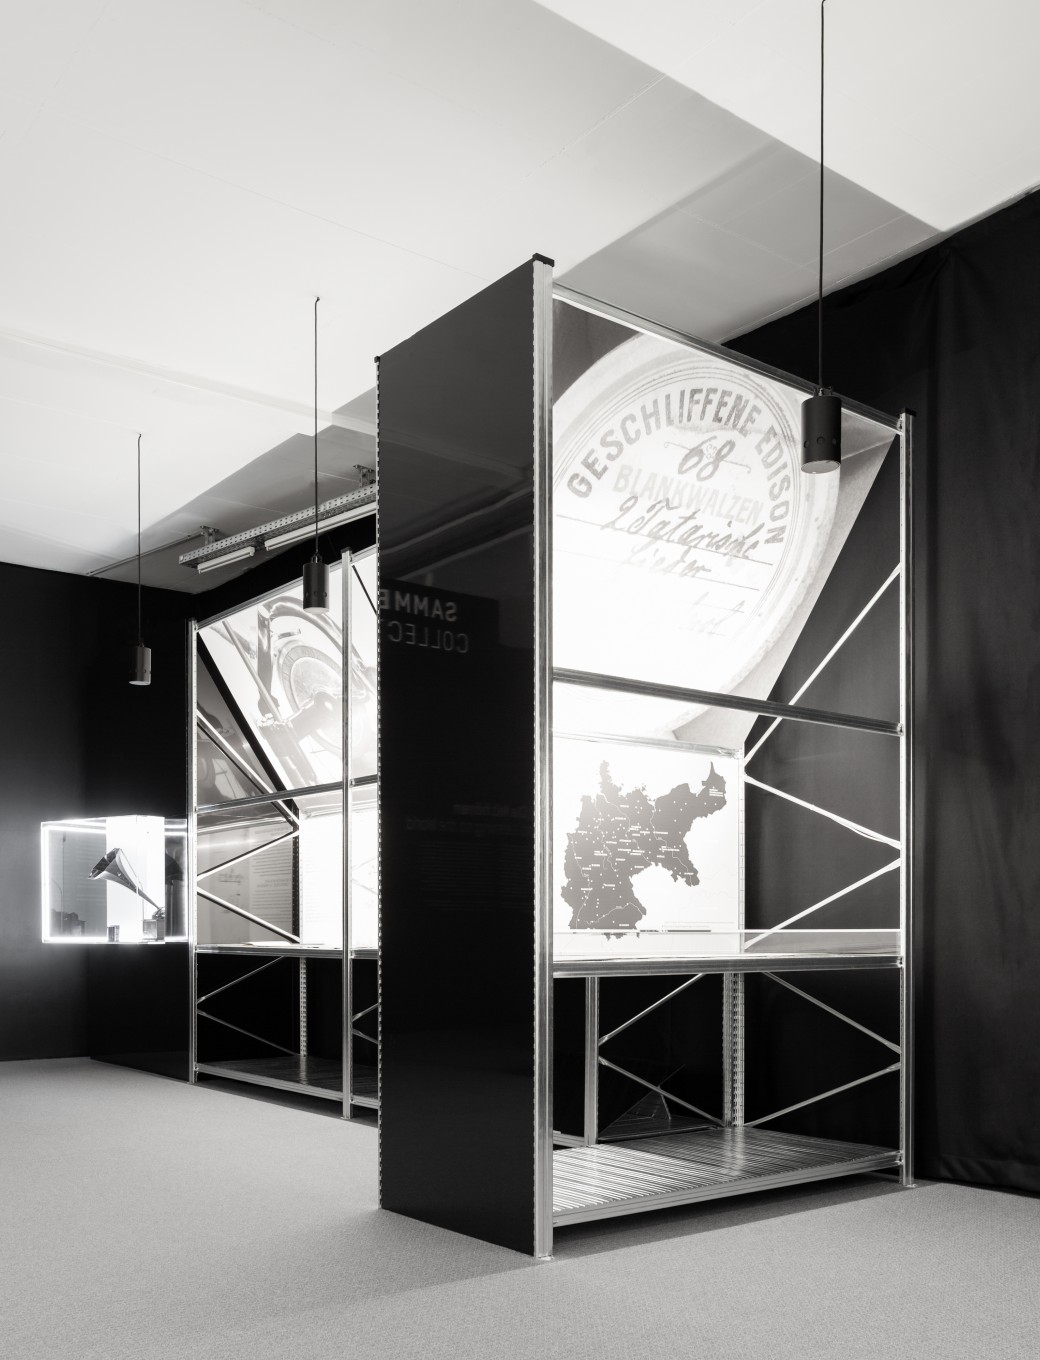 thegreeneyl ausstellungsdesign exhibition design humboldt forum berlin vitirinen regale